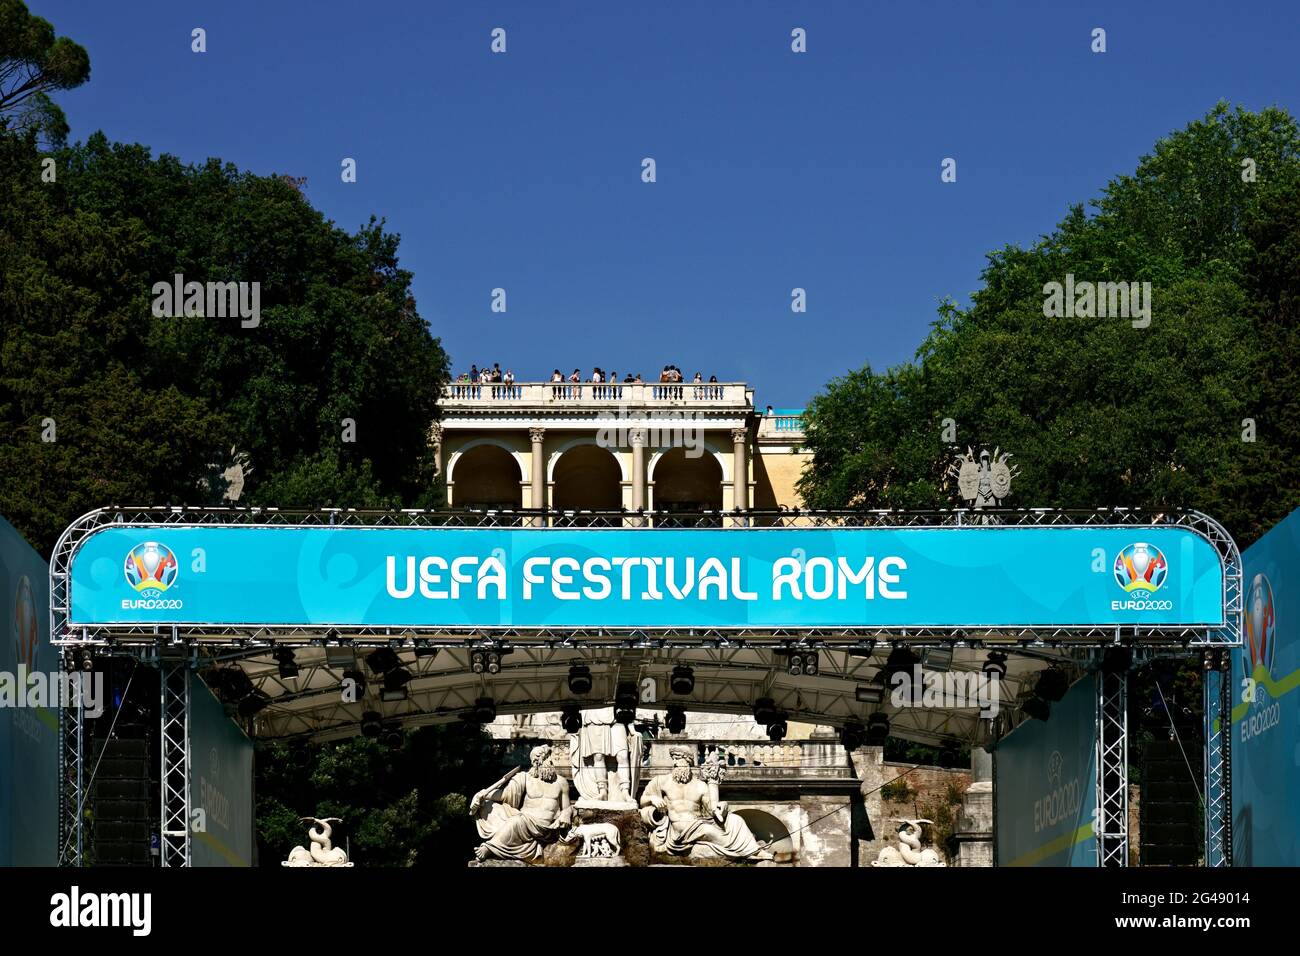 Uefa Champions League Euro 2020, Fußball-Europameisterschaften. Fan Zone Football Village auf der Piazza del Popolo. Rom, Italien, Europa. 2021 Stockfoto